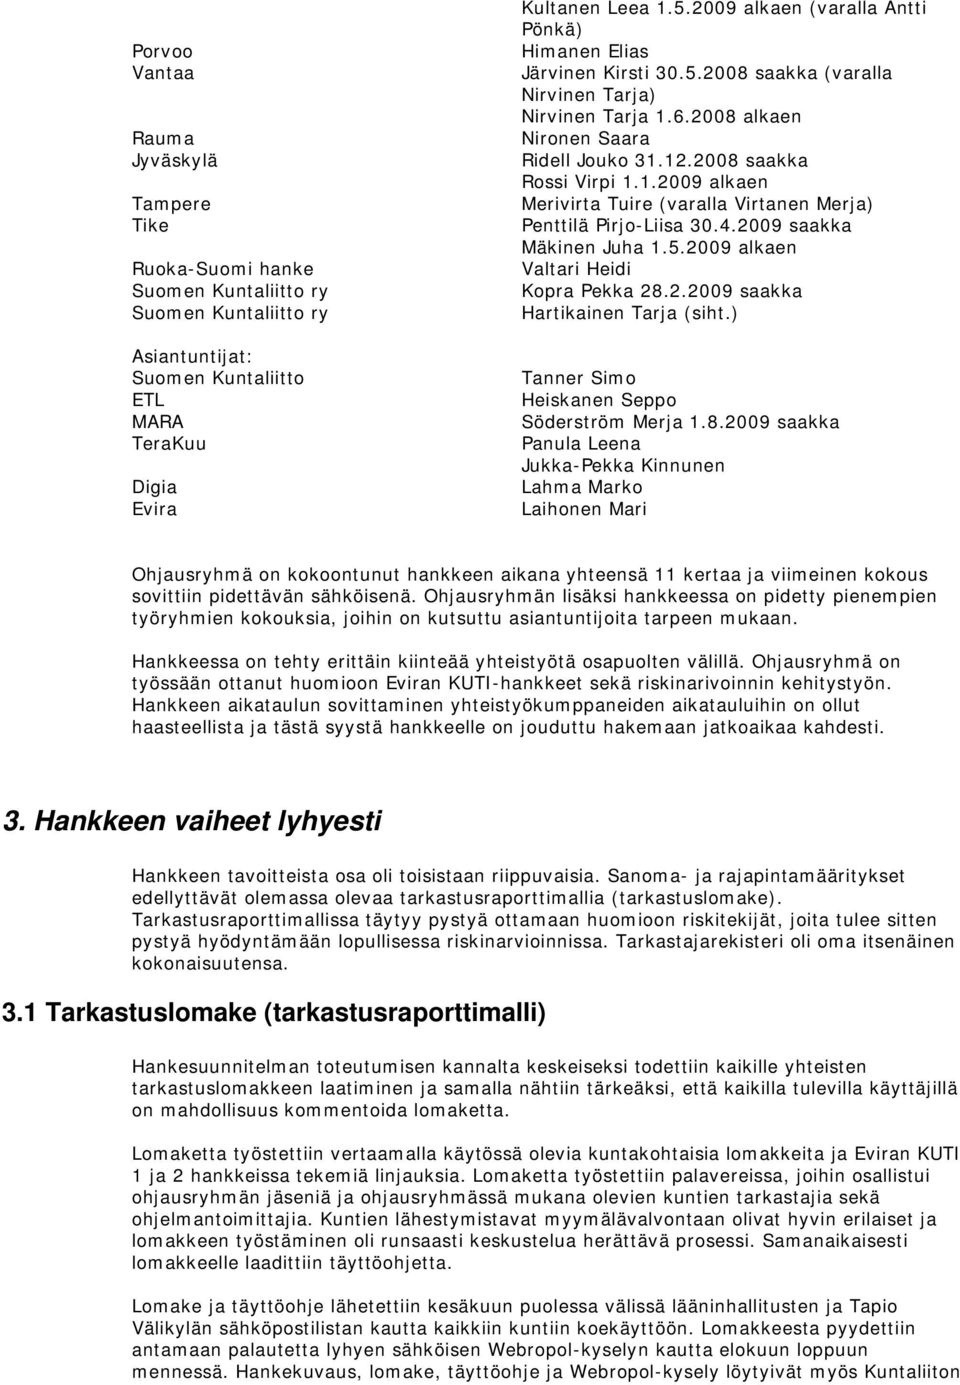 4.2009 saakka Mäkinen Juha 1.5.2009 alkaen Valtari Heidi Kopra Pekka 28.